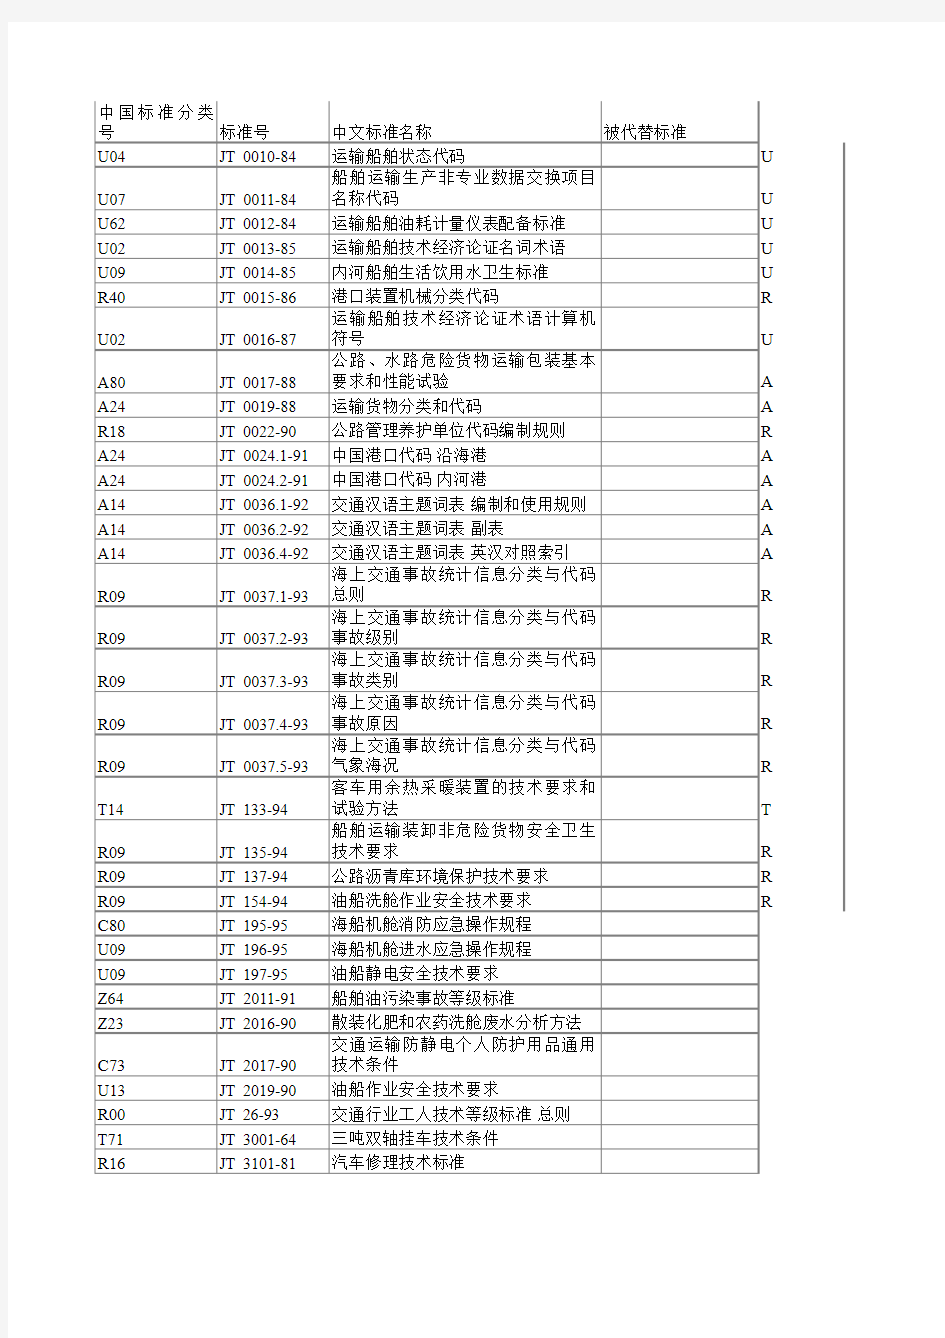 中国标准分类号